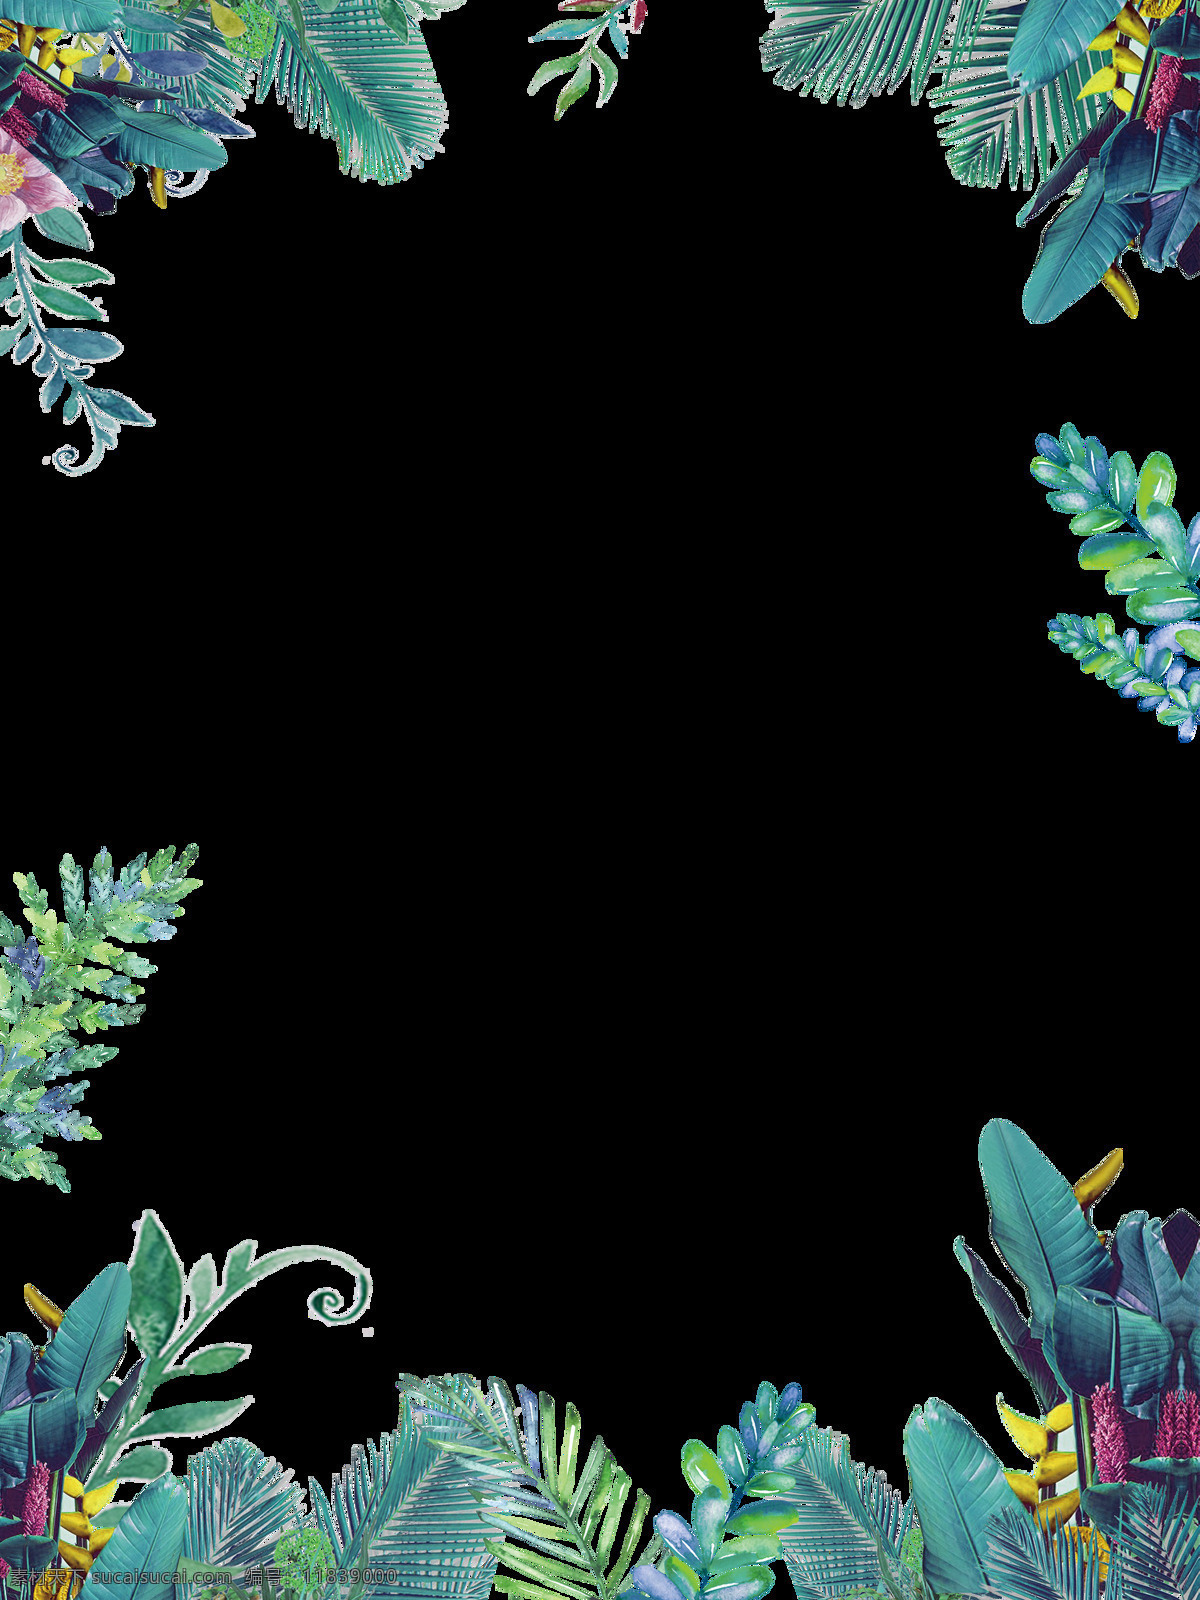 春季 元素 植物 边框 卡通 透明 抠图专用 装饰 设计素材